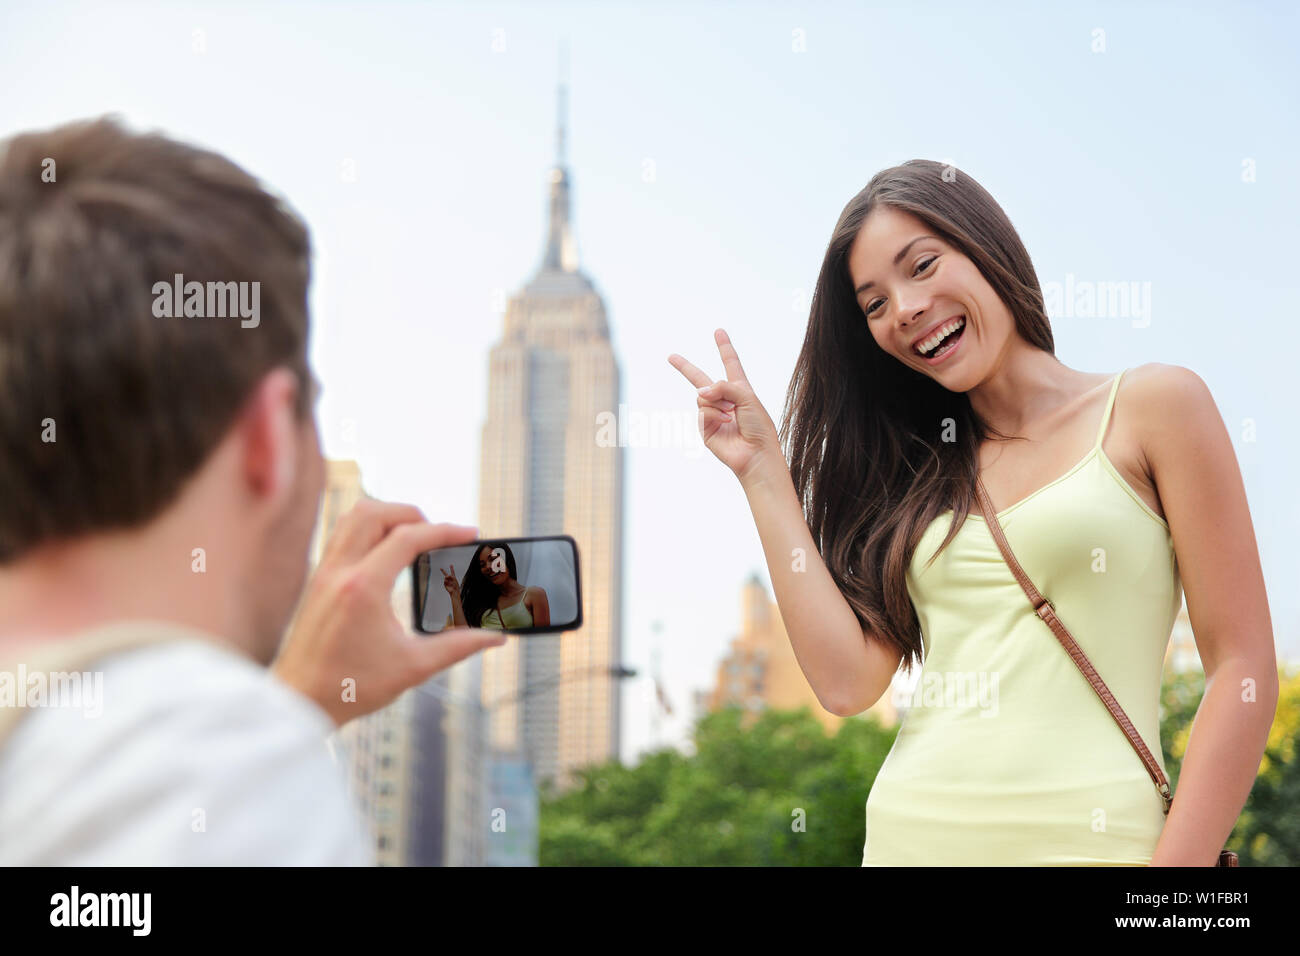 NYC asiatische chinesische Touristen Mädchen am Empire State Building posiert die v Handzeichen. Junge paar Touristen fotografieren mit Smartphone in New York City vor der berühmten Wahrzeichen. Stockfoto